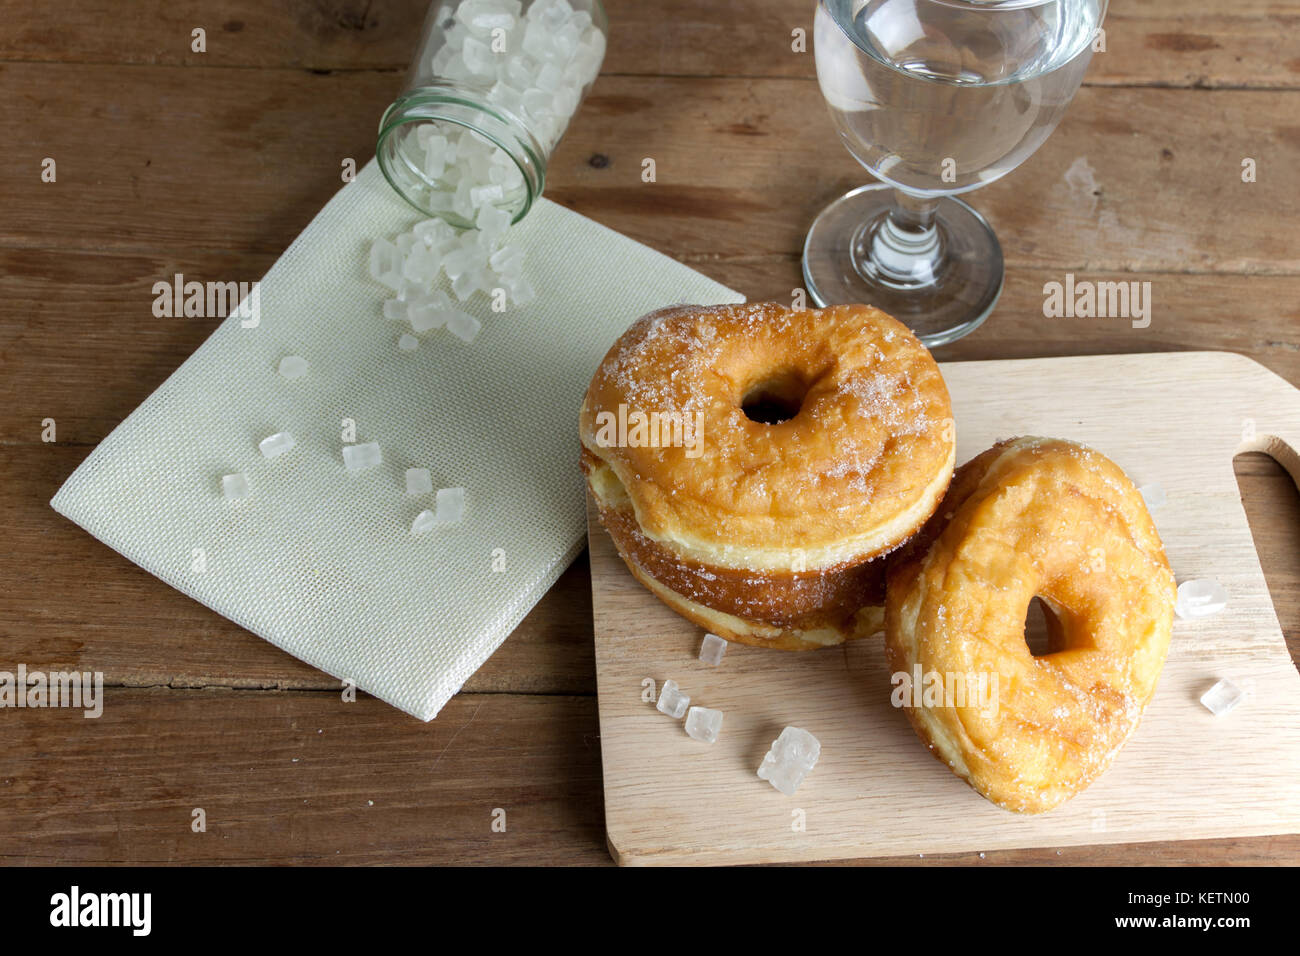 Donuts vitrage avec un sucre glace sur une table en bois rustique Banque D'Images